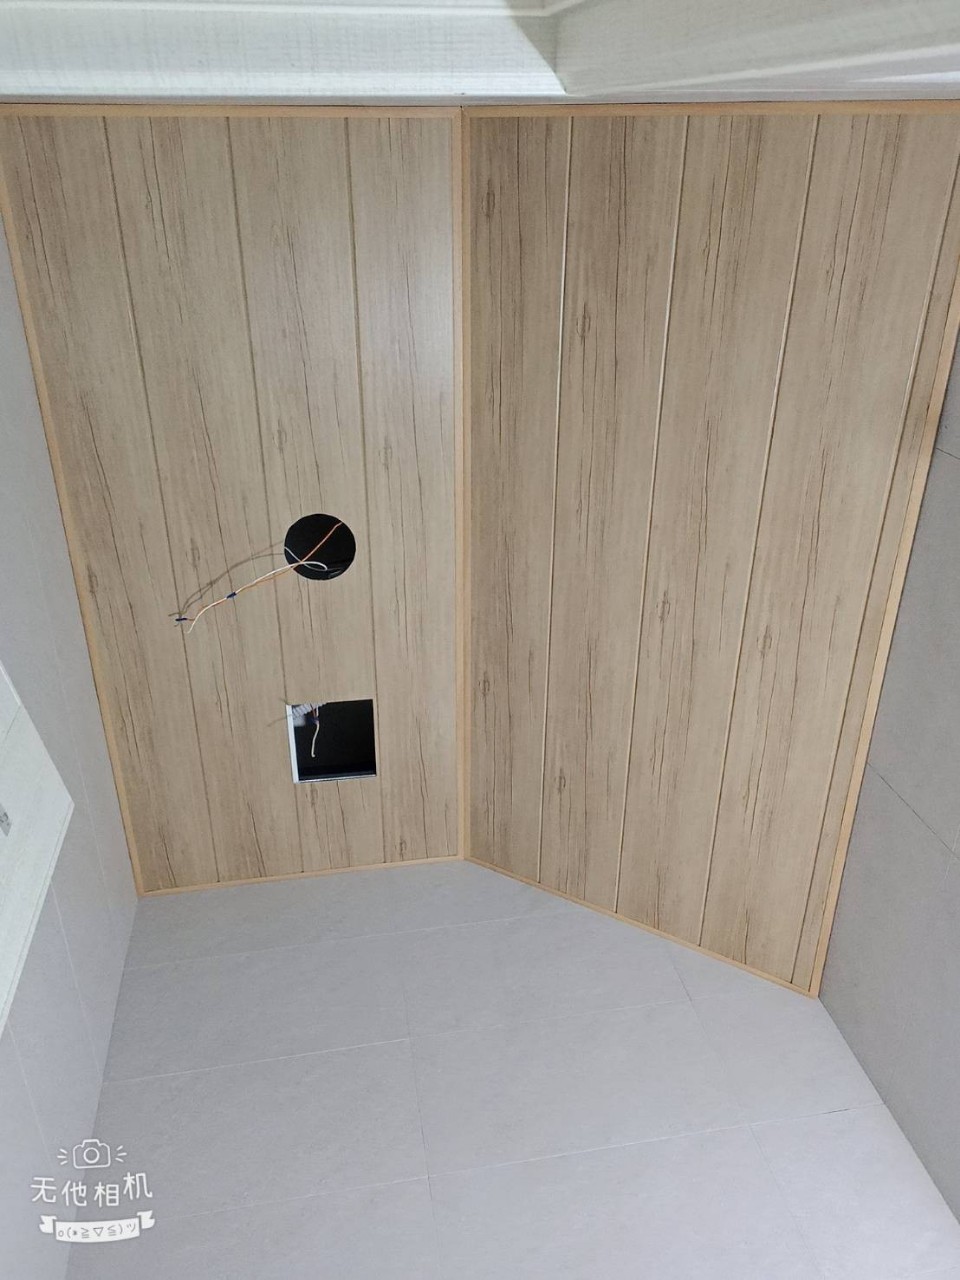 高雄房屋翻修 : 輕鋼架天花板-有造型木紋-長條PVC板